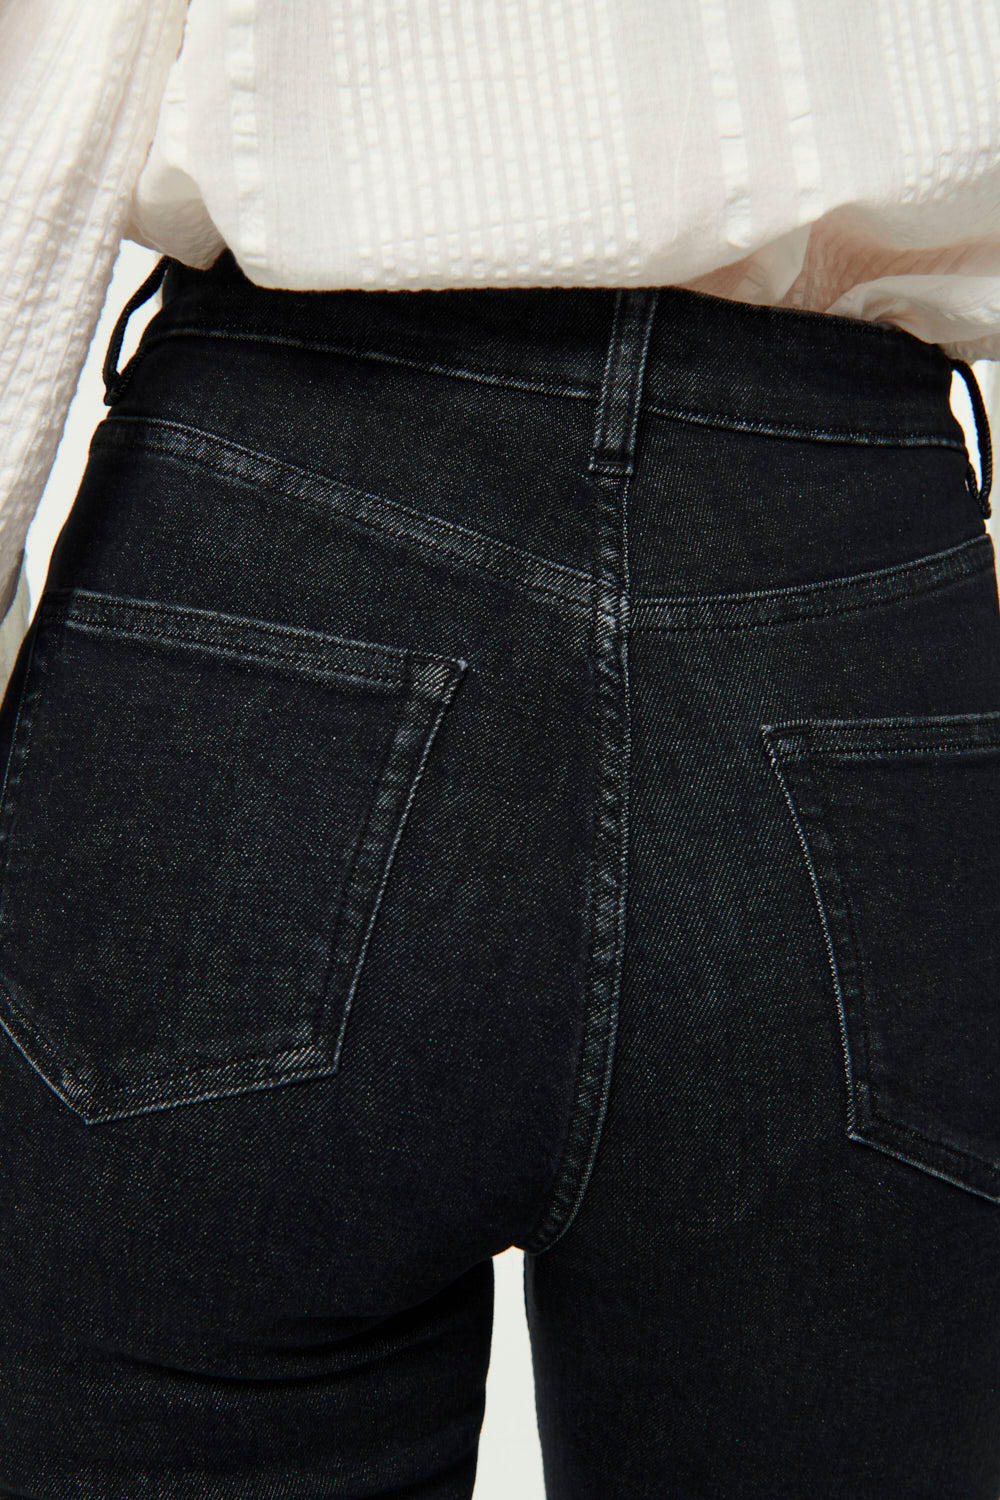 stonewashed black lulu jeans